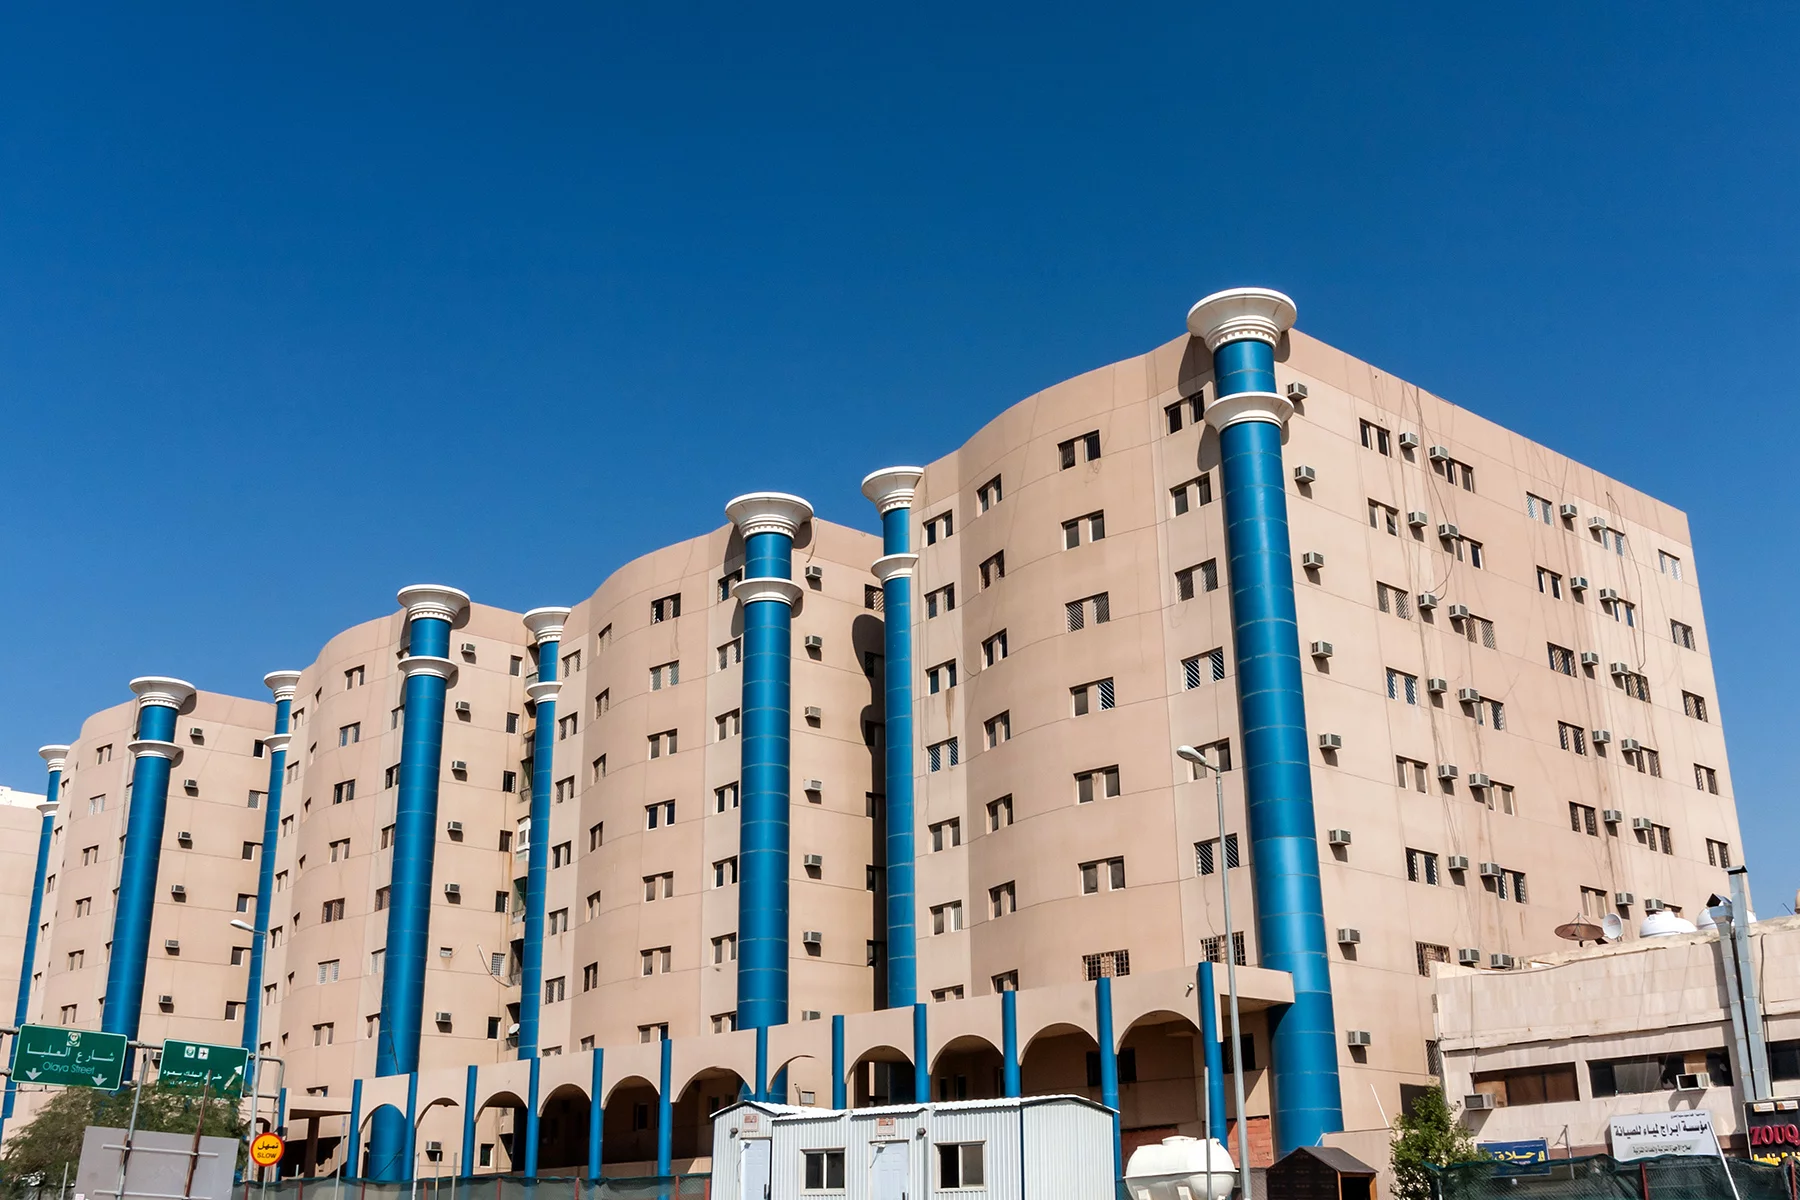 Apartment buildings in Riyadh, Saudi Arabia